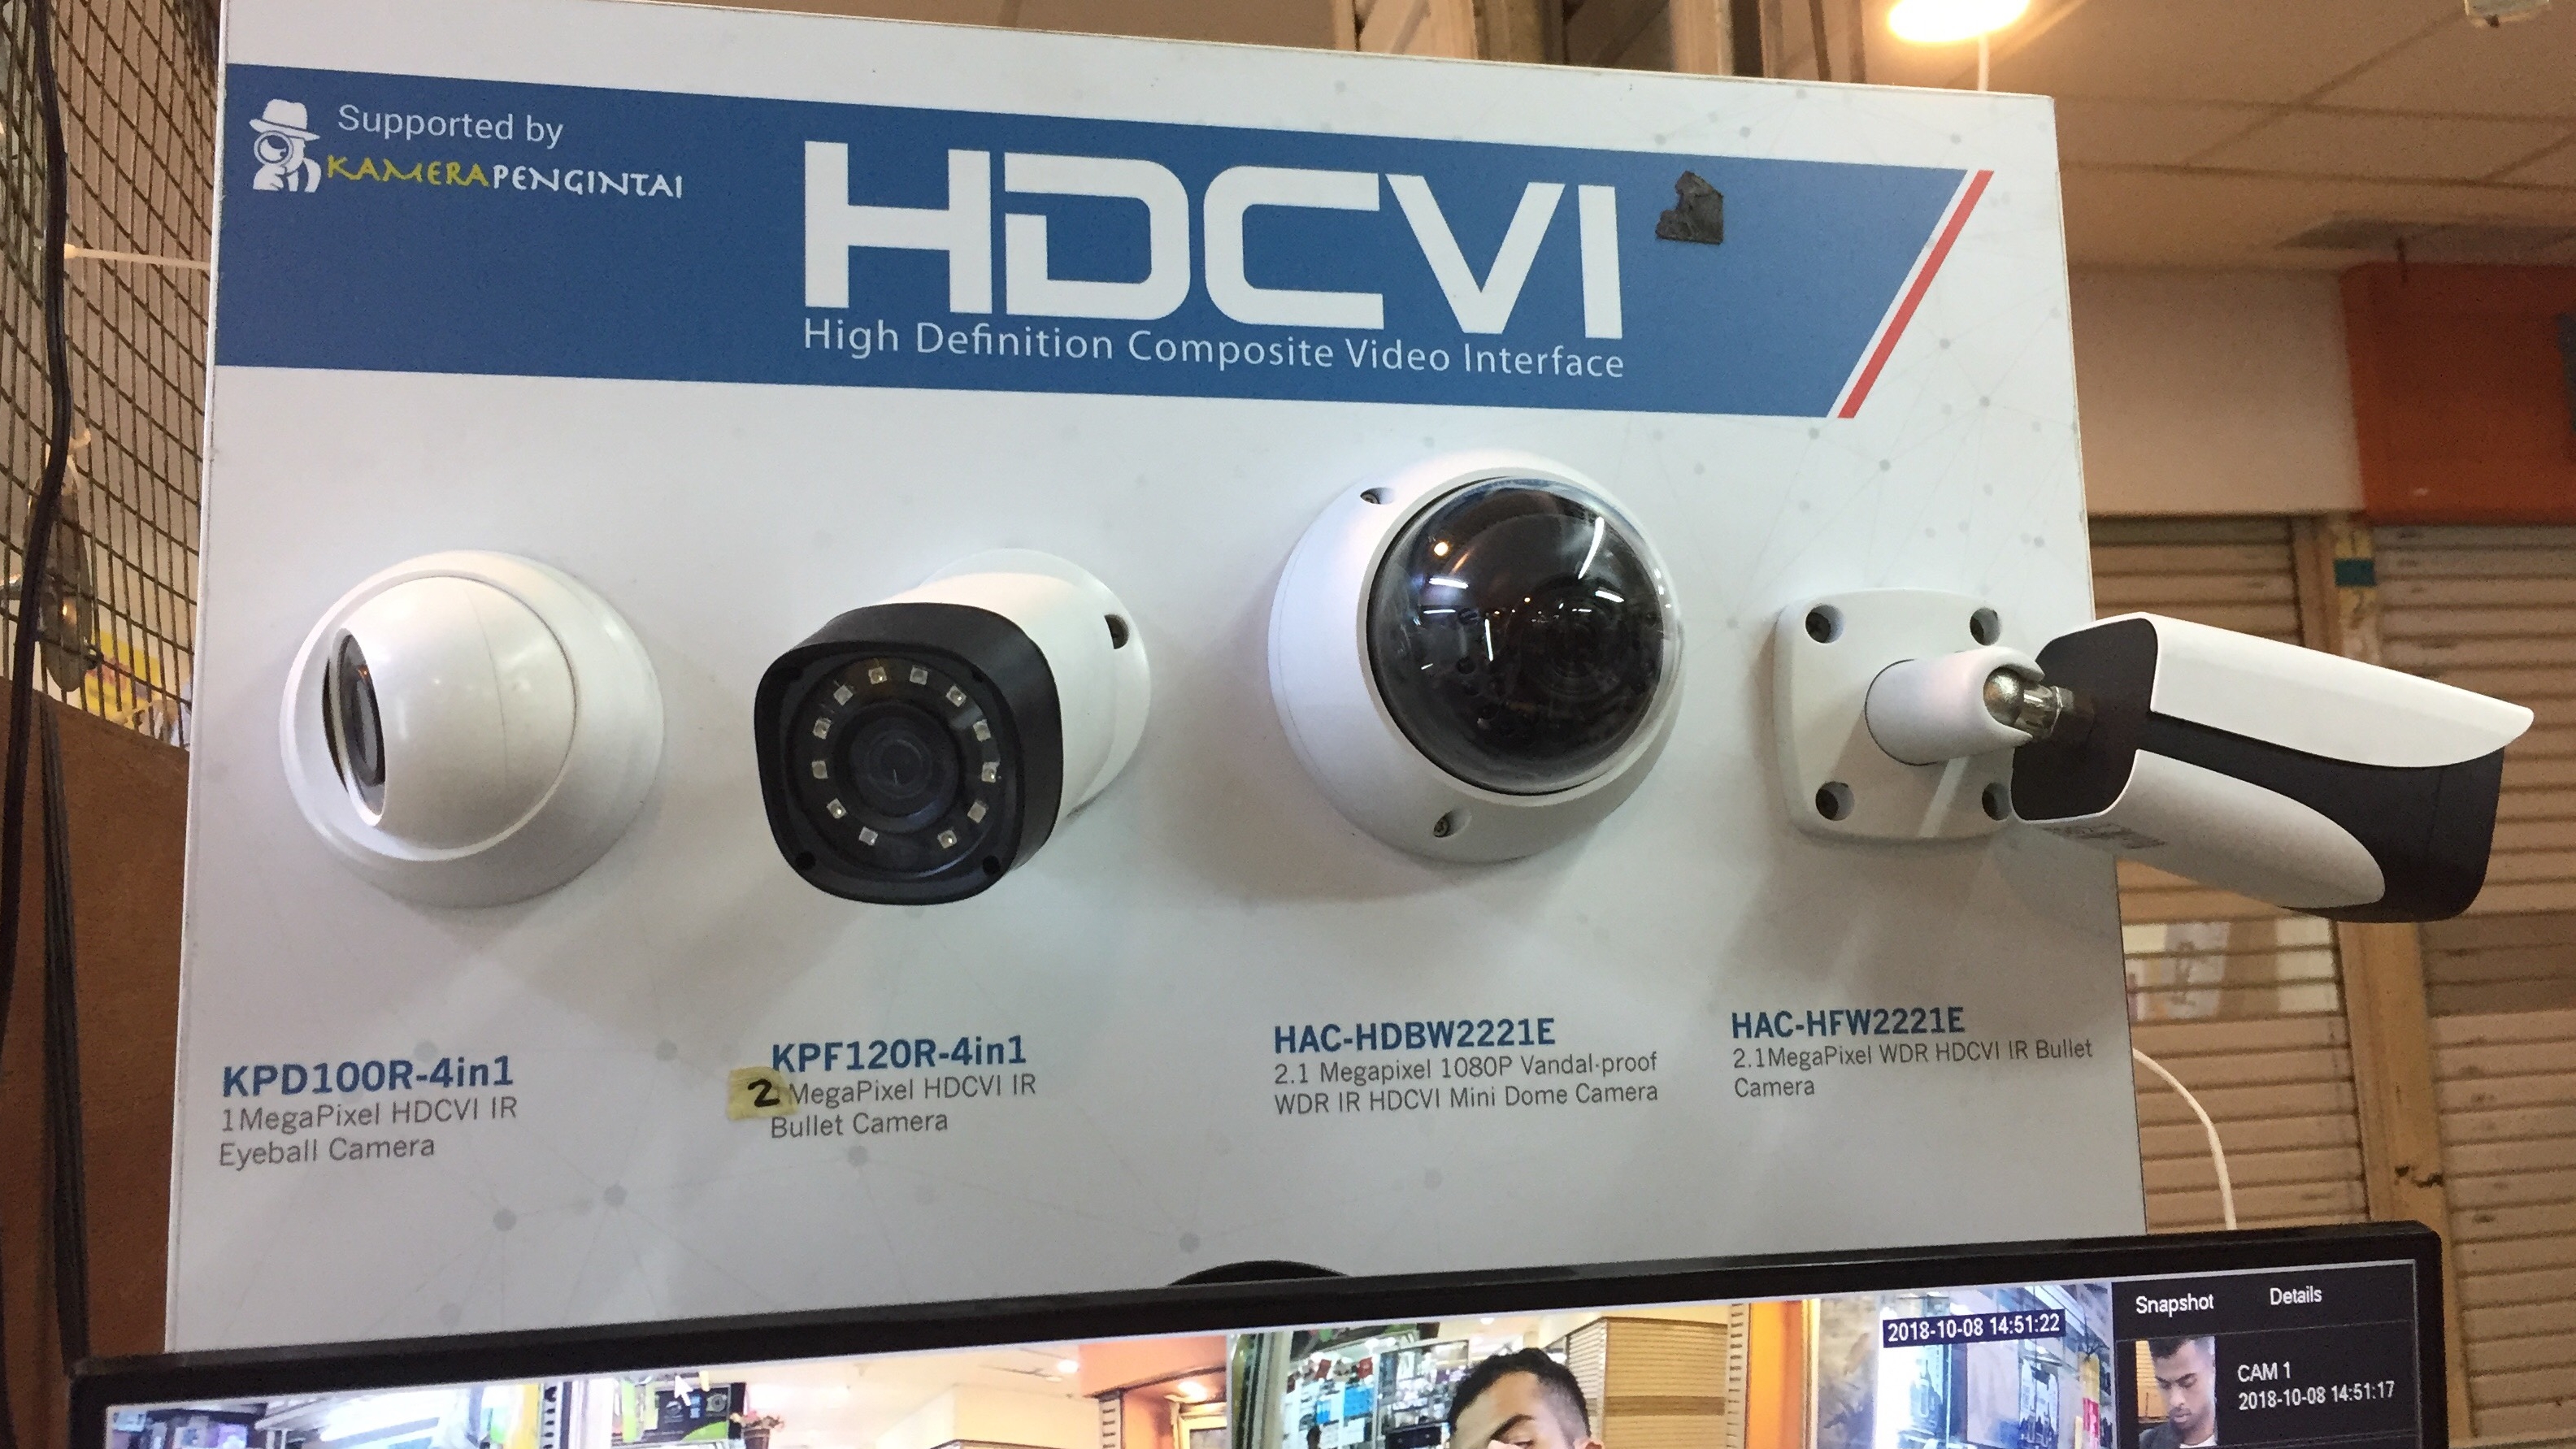 Toko CCTV Glodok Solusi Keamanan Anda